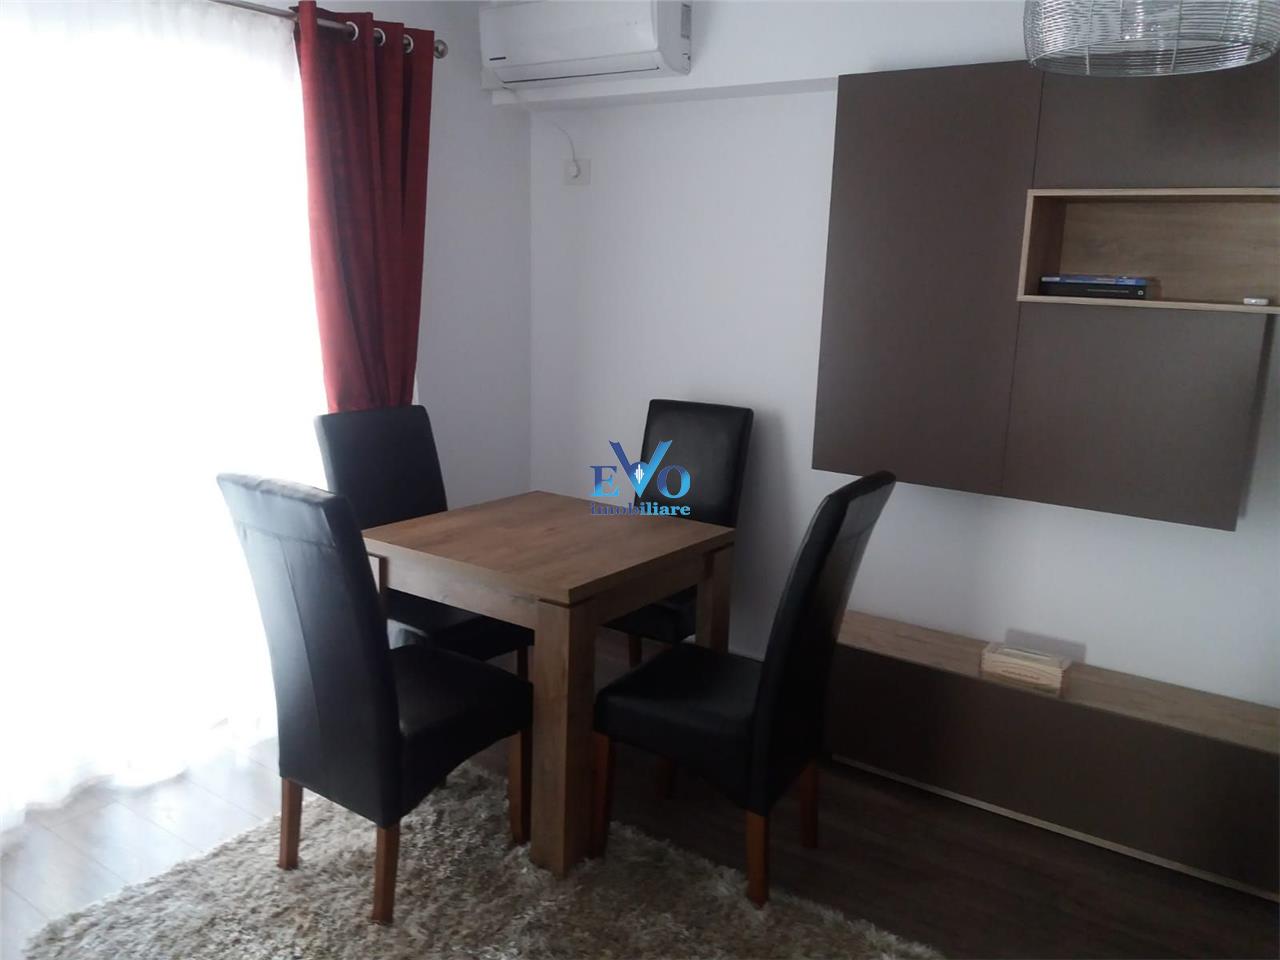 Inchiriere apartament cu 2 camere in Tatarasi, decomandat, 53mp